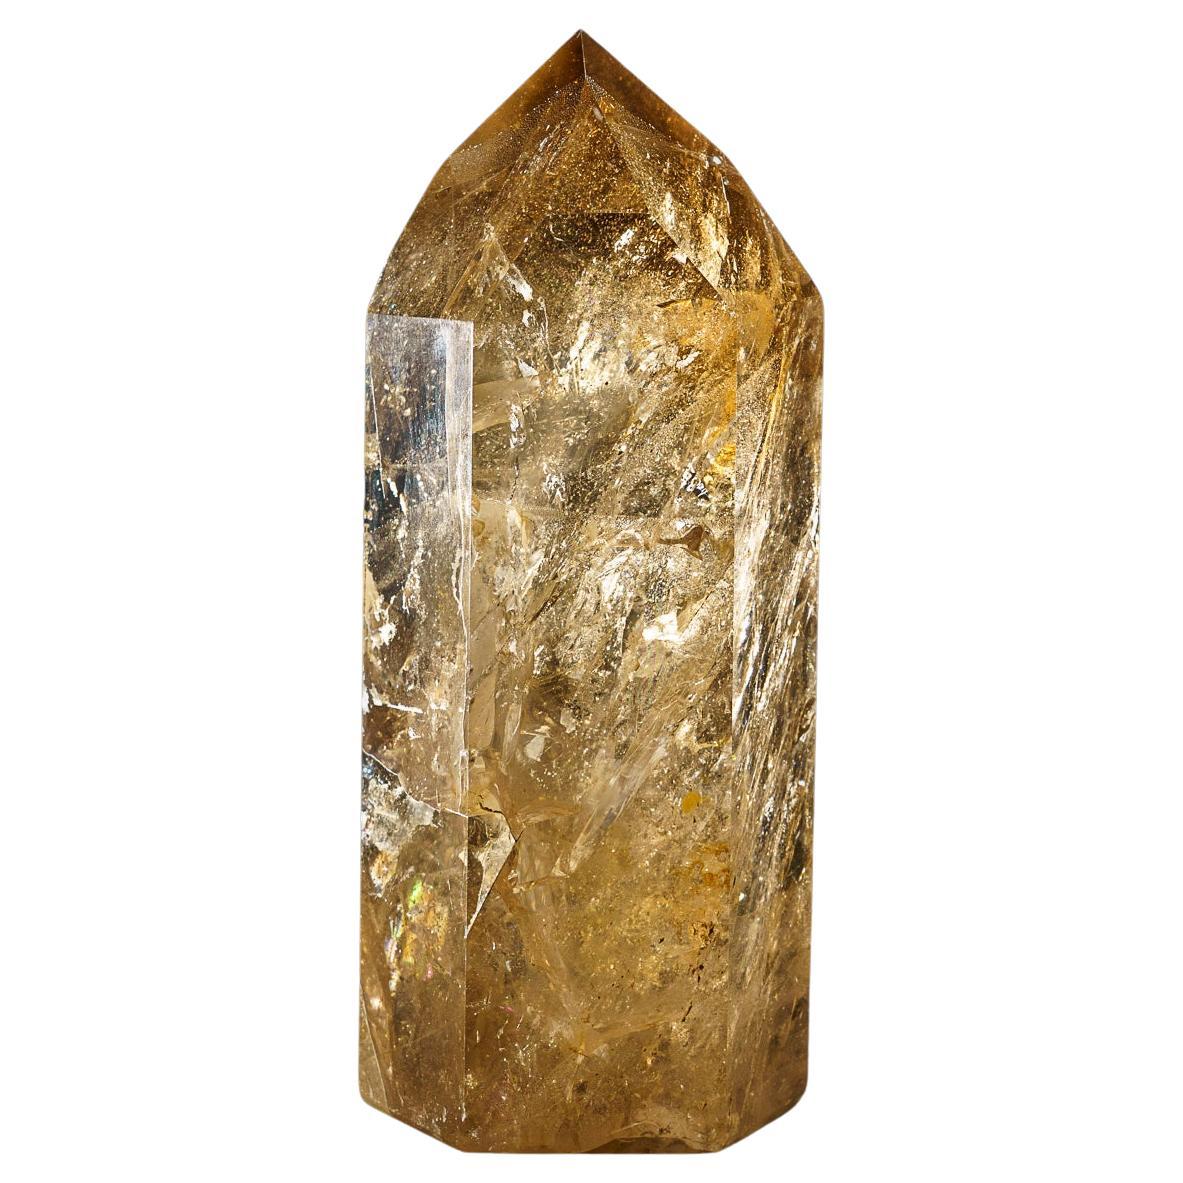 Grand point de cristal de quartz fumé authentique du Brésil (8 livres)